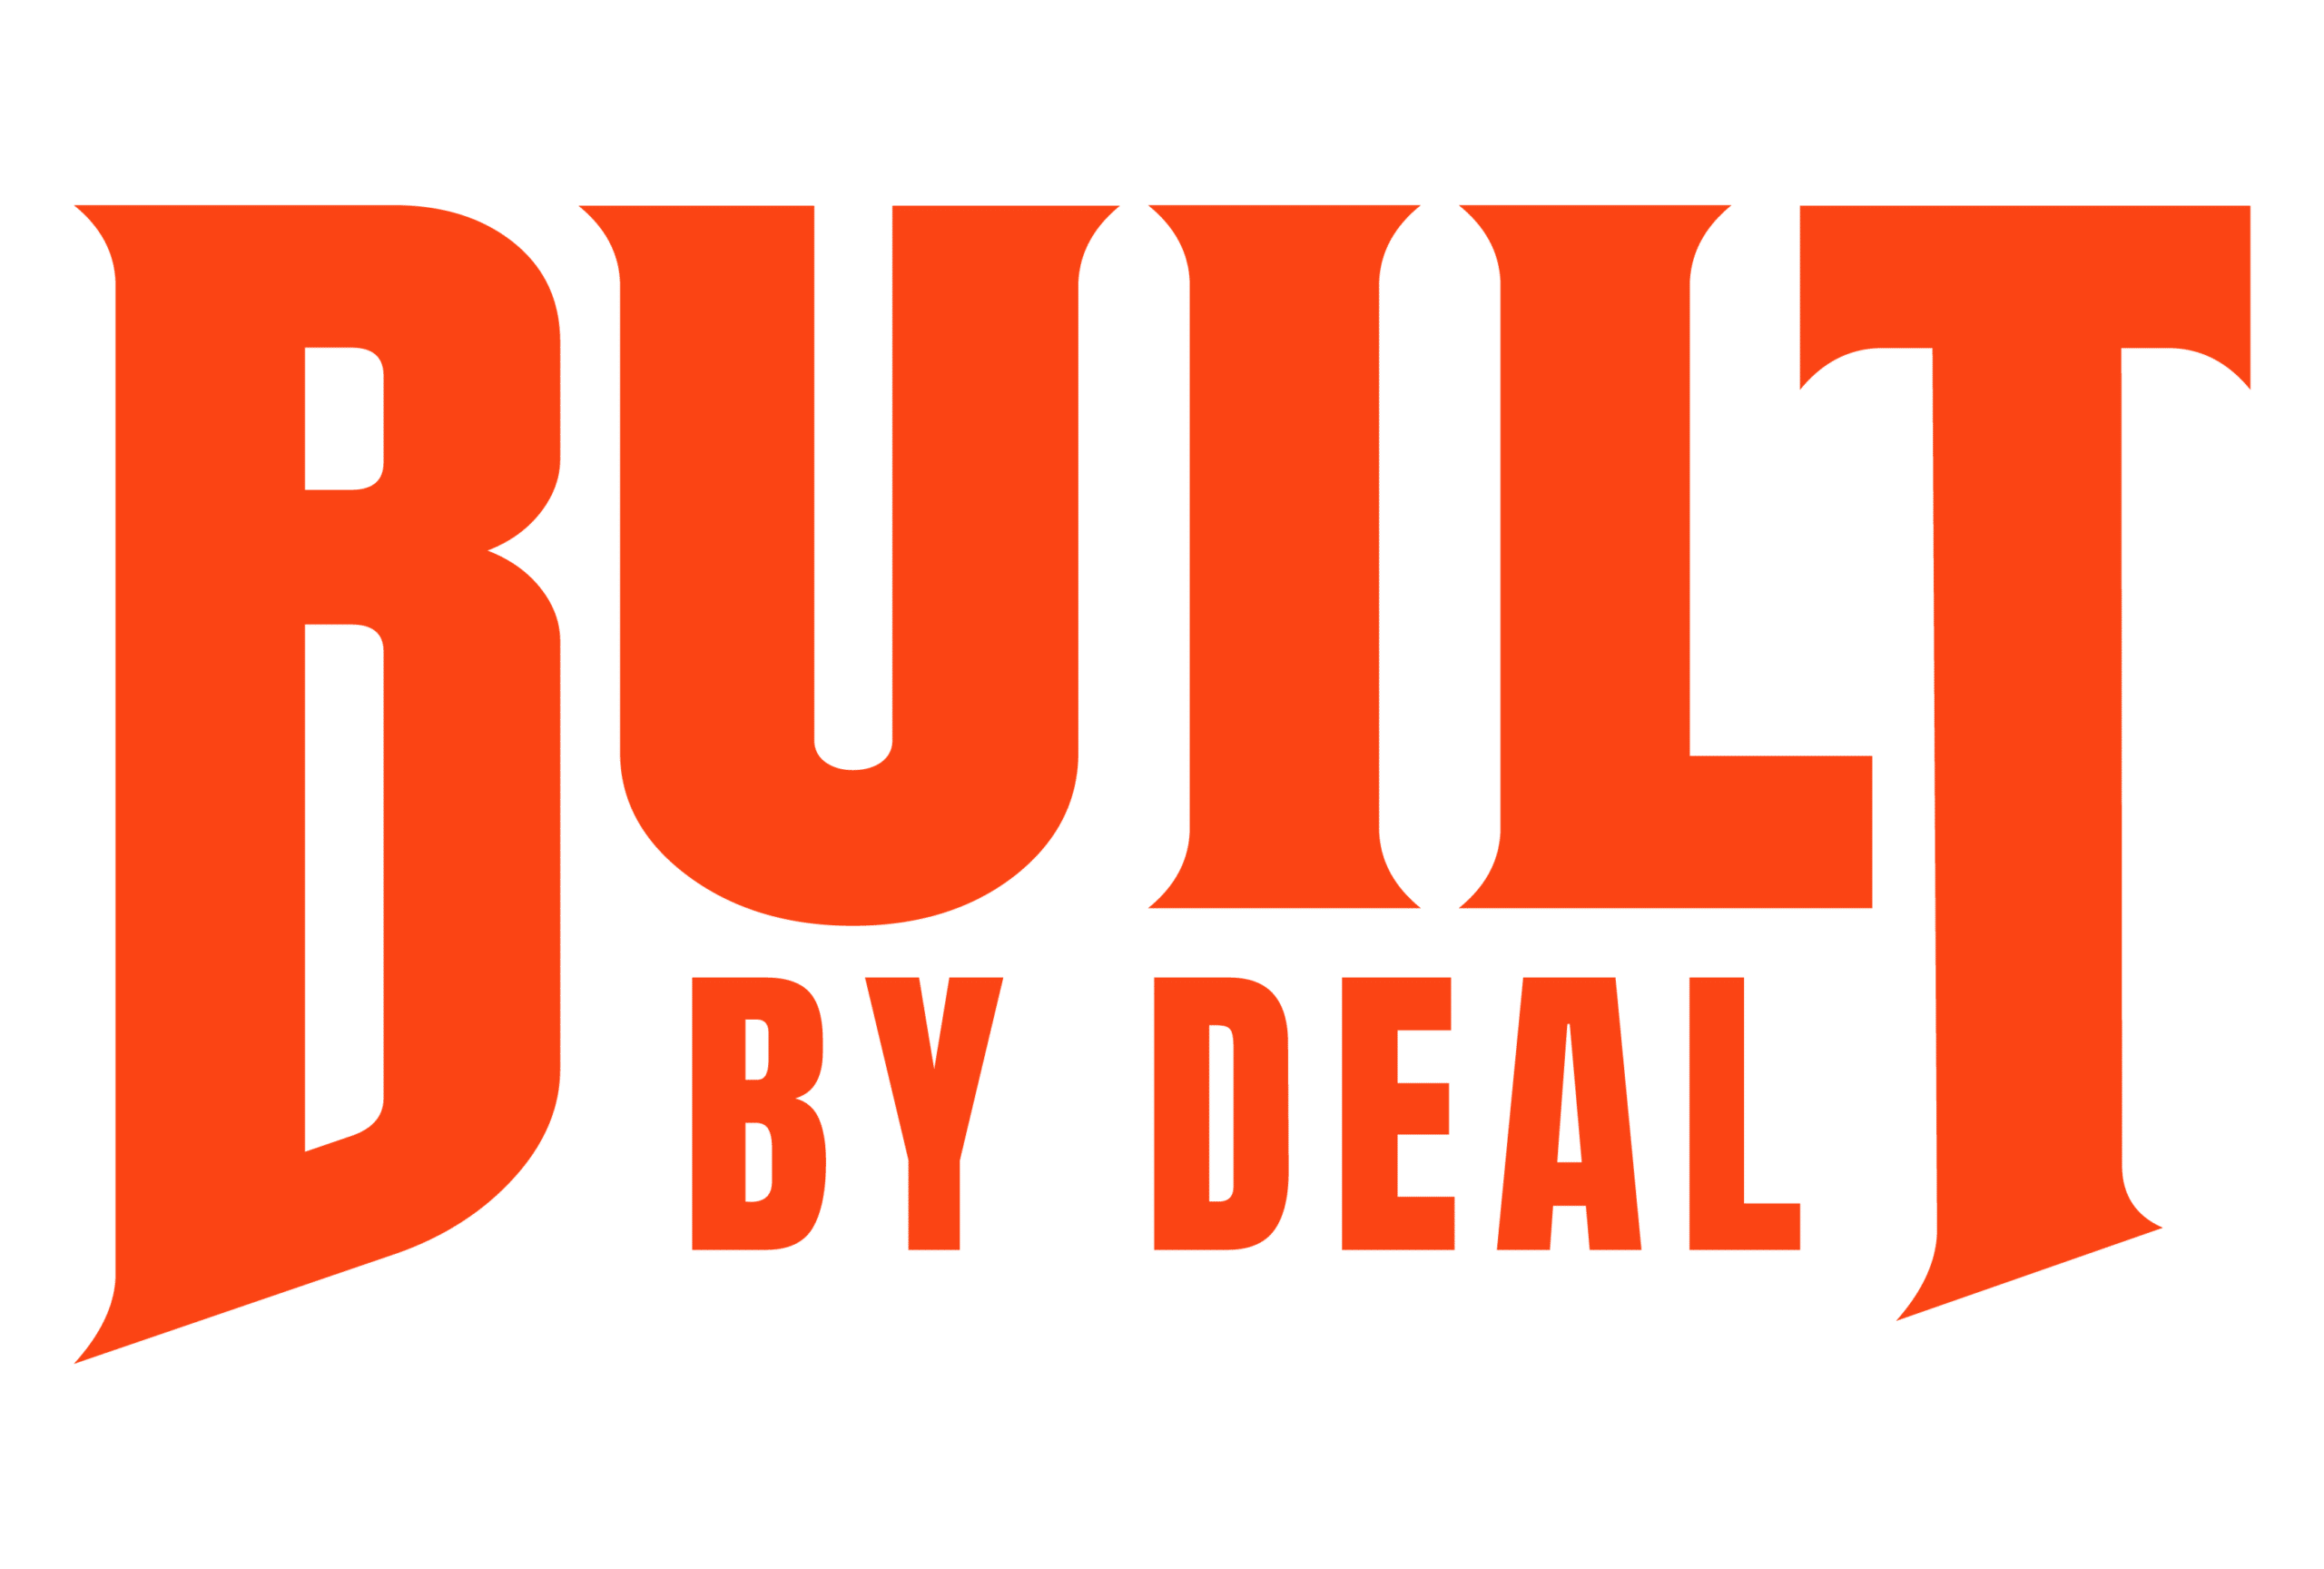 Built By Deal Logo - Zach Deal - Viking Warrior